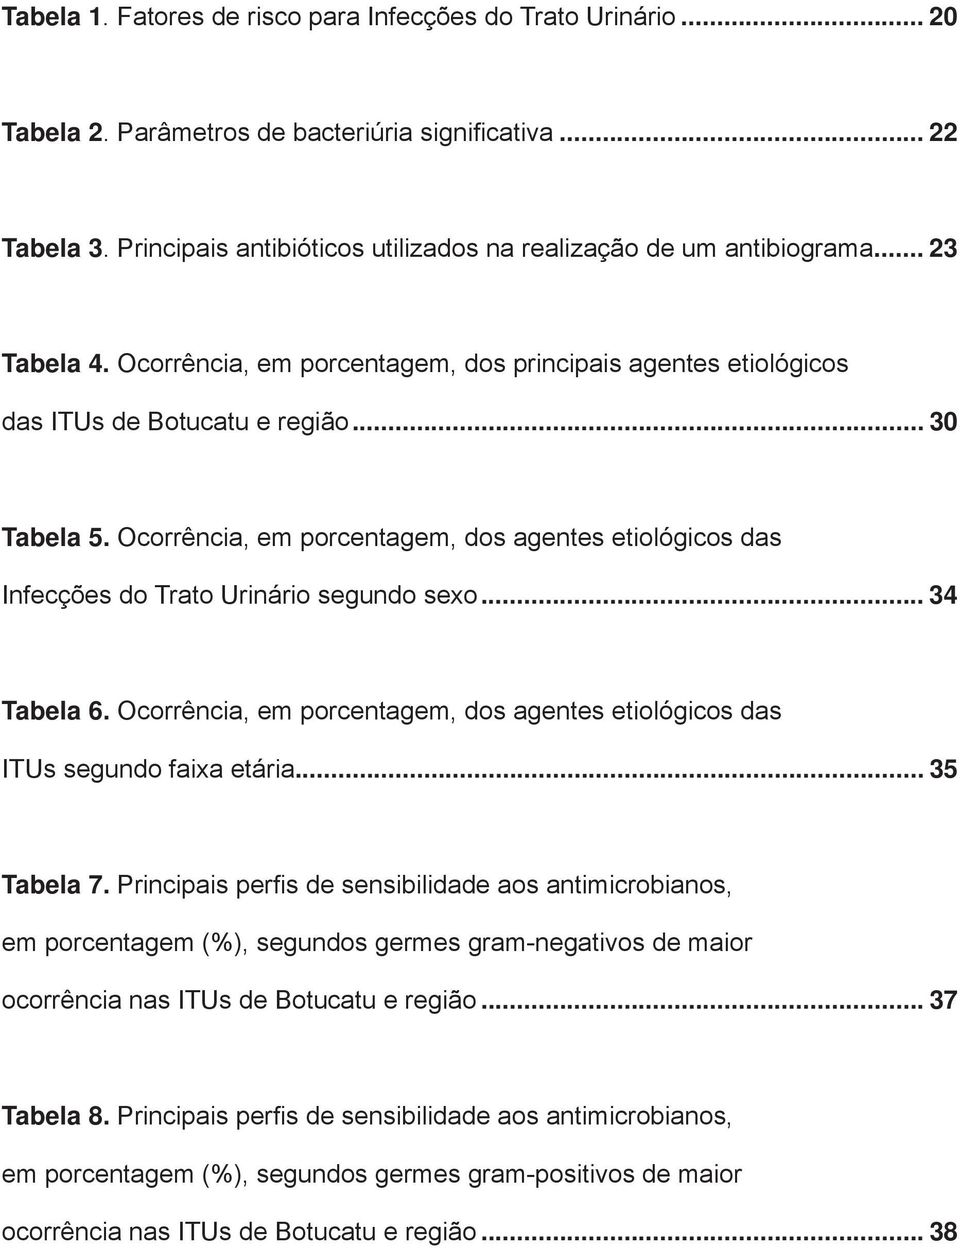 Ocorrência, em porcentagem, dos agentes etiológicos das Infecções do Trato Urinário segundo sexo... 34 Tabela 6. Ocorrência, em porcentagem, dos agentes etiológicos das ITUs segundo faixa etária.